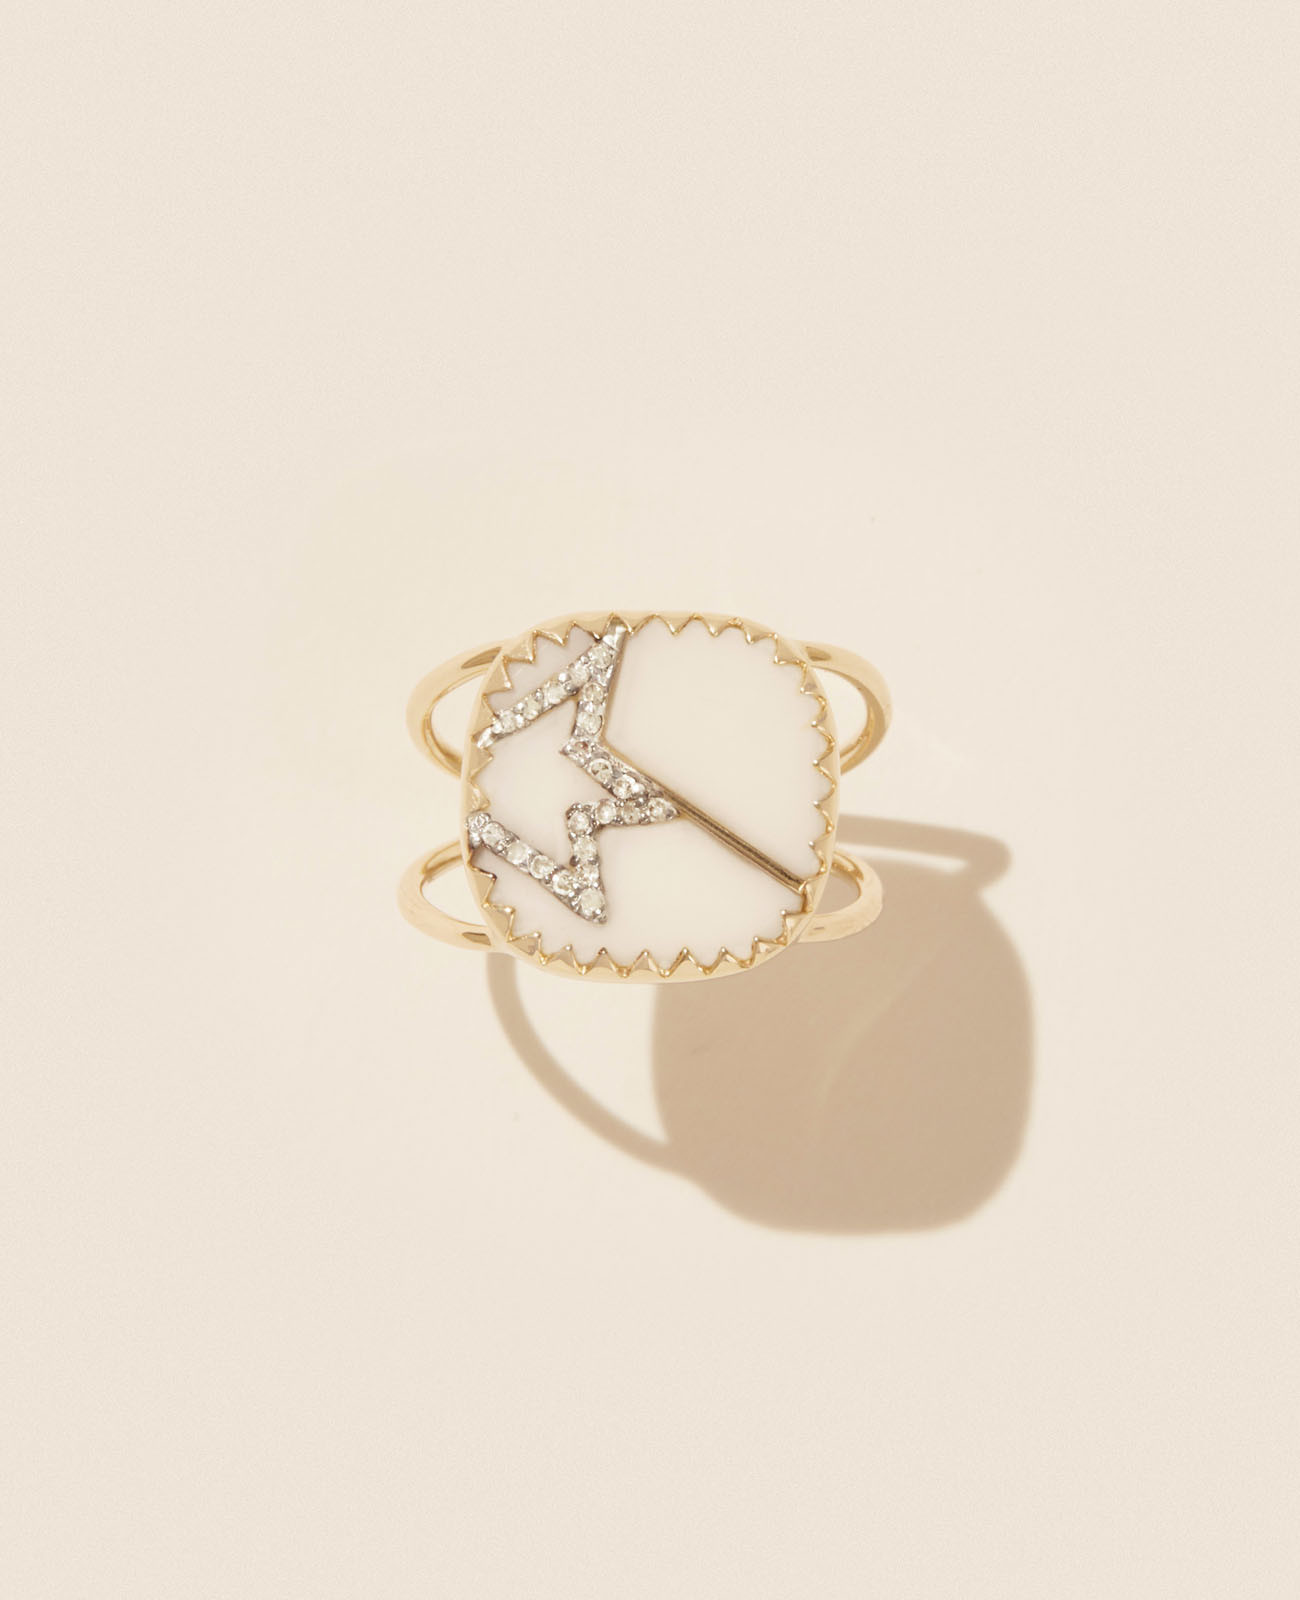 VARDA N°2 WHITE DIAMOND ring pascale monvoisin jewelry paris